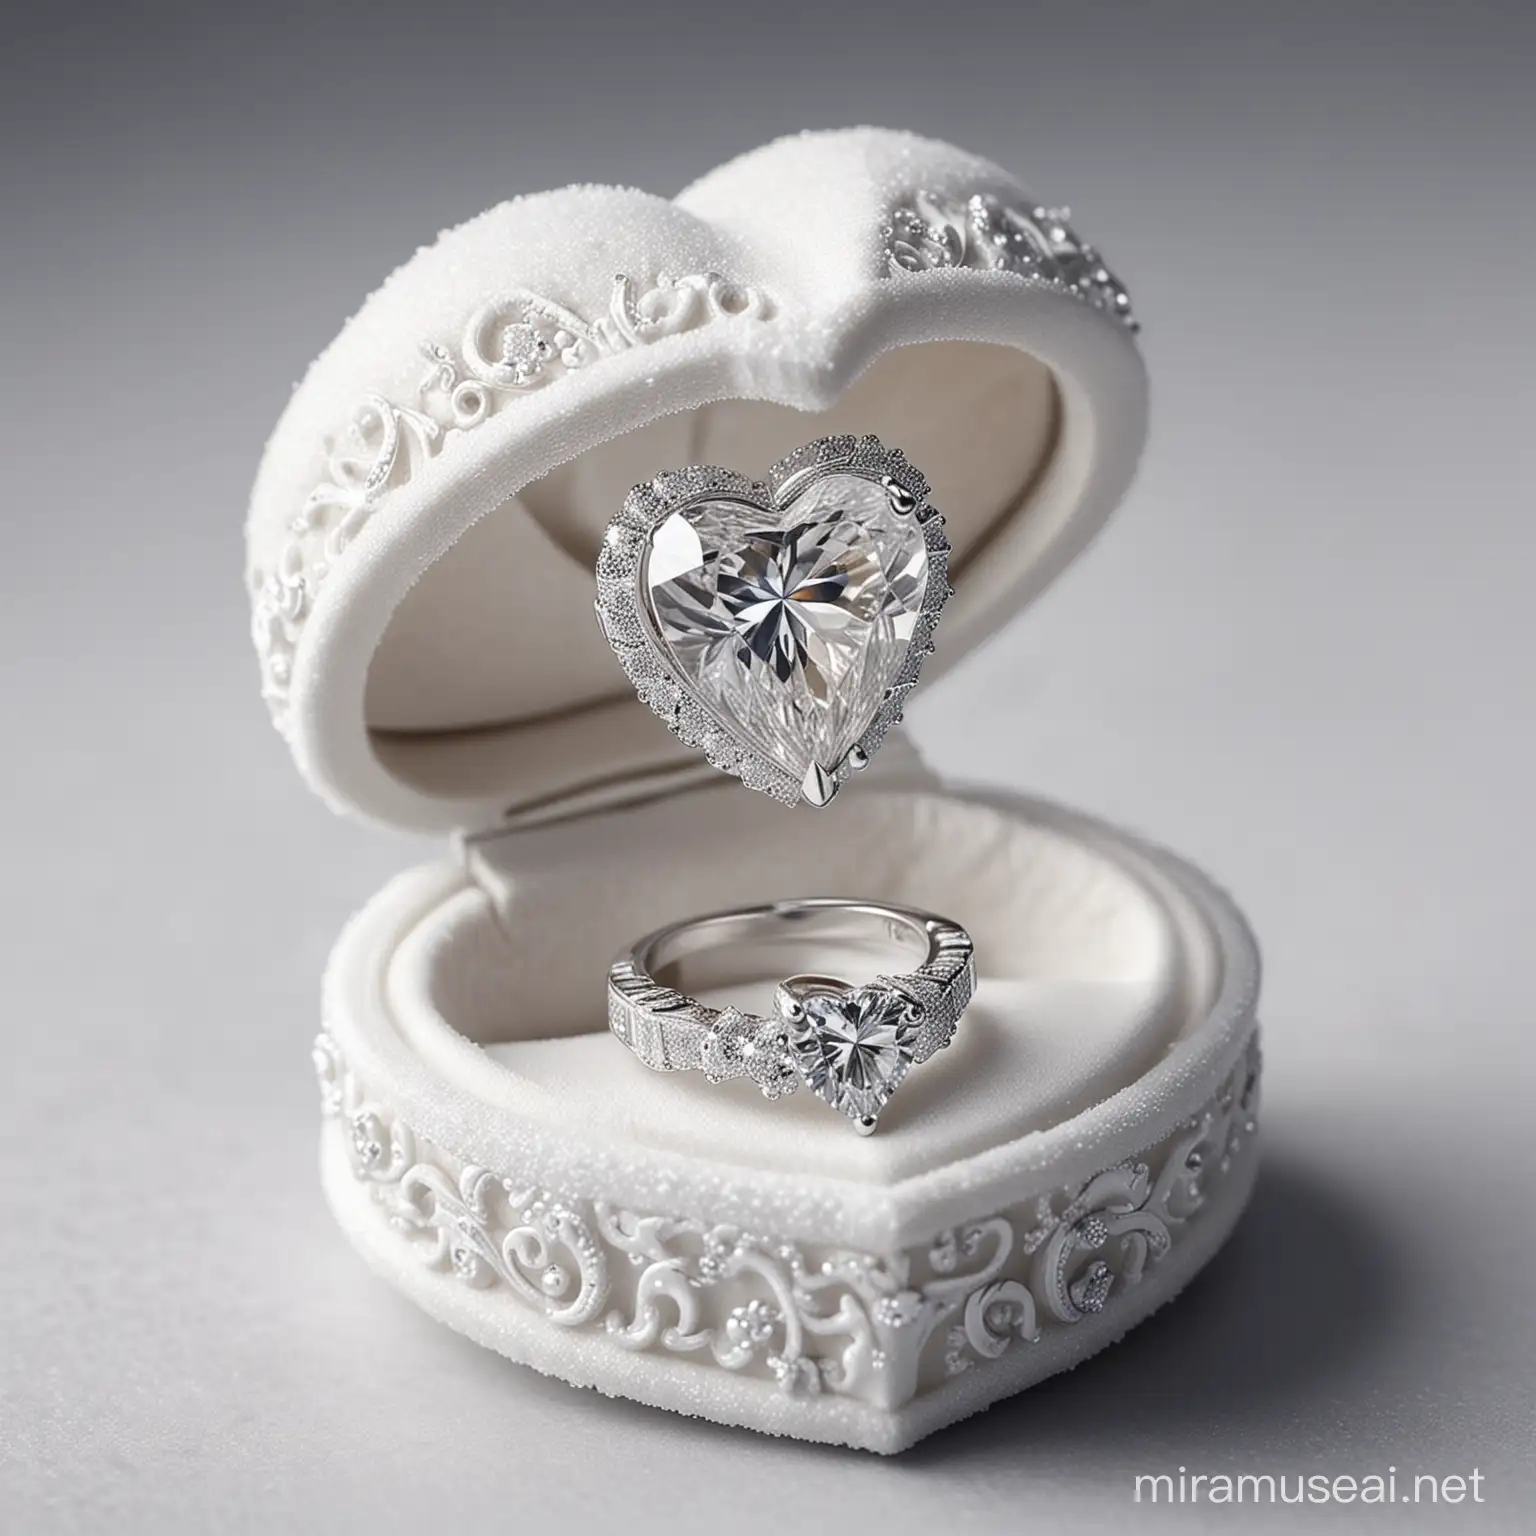 коробочка для кольца в виде ледяного сердца, крышка открыта, красивое обручальное кольцо, большой круглый бриллиант